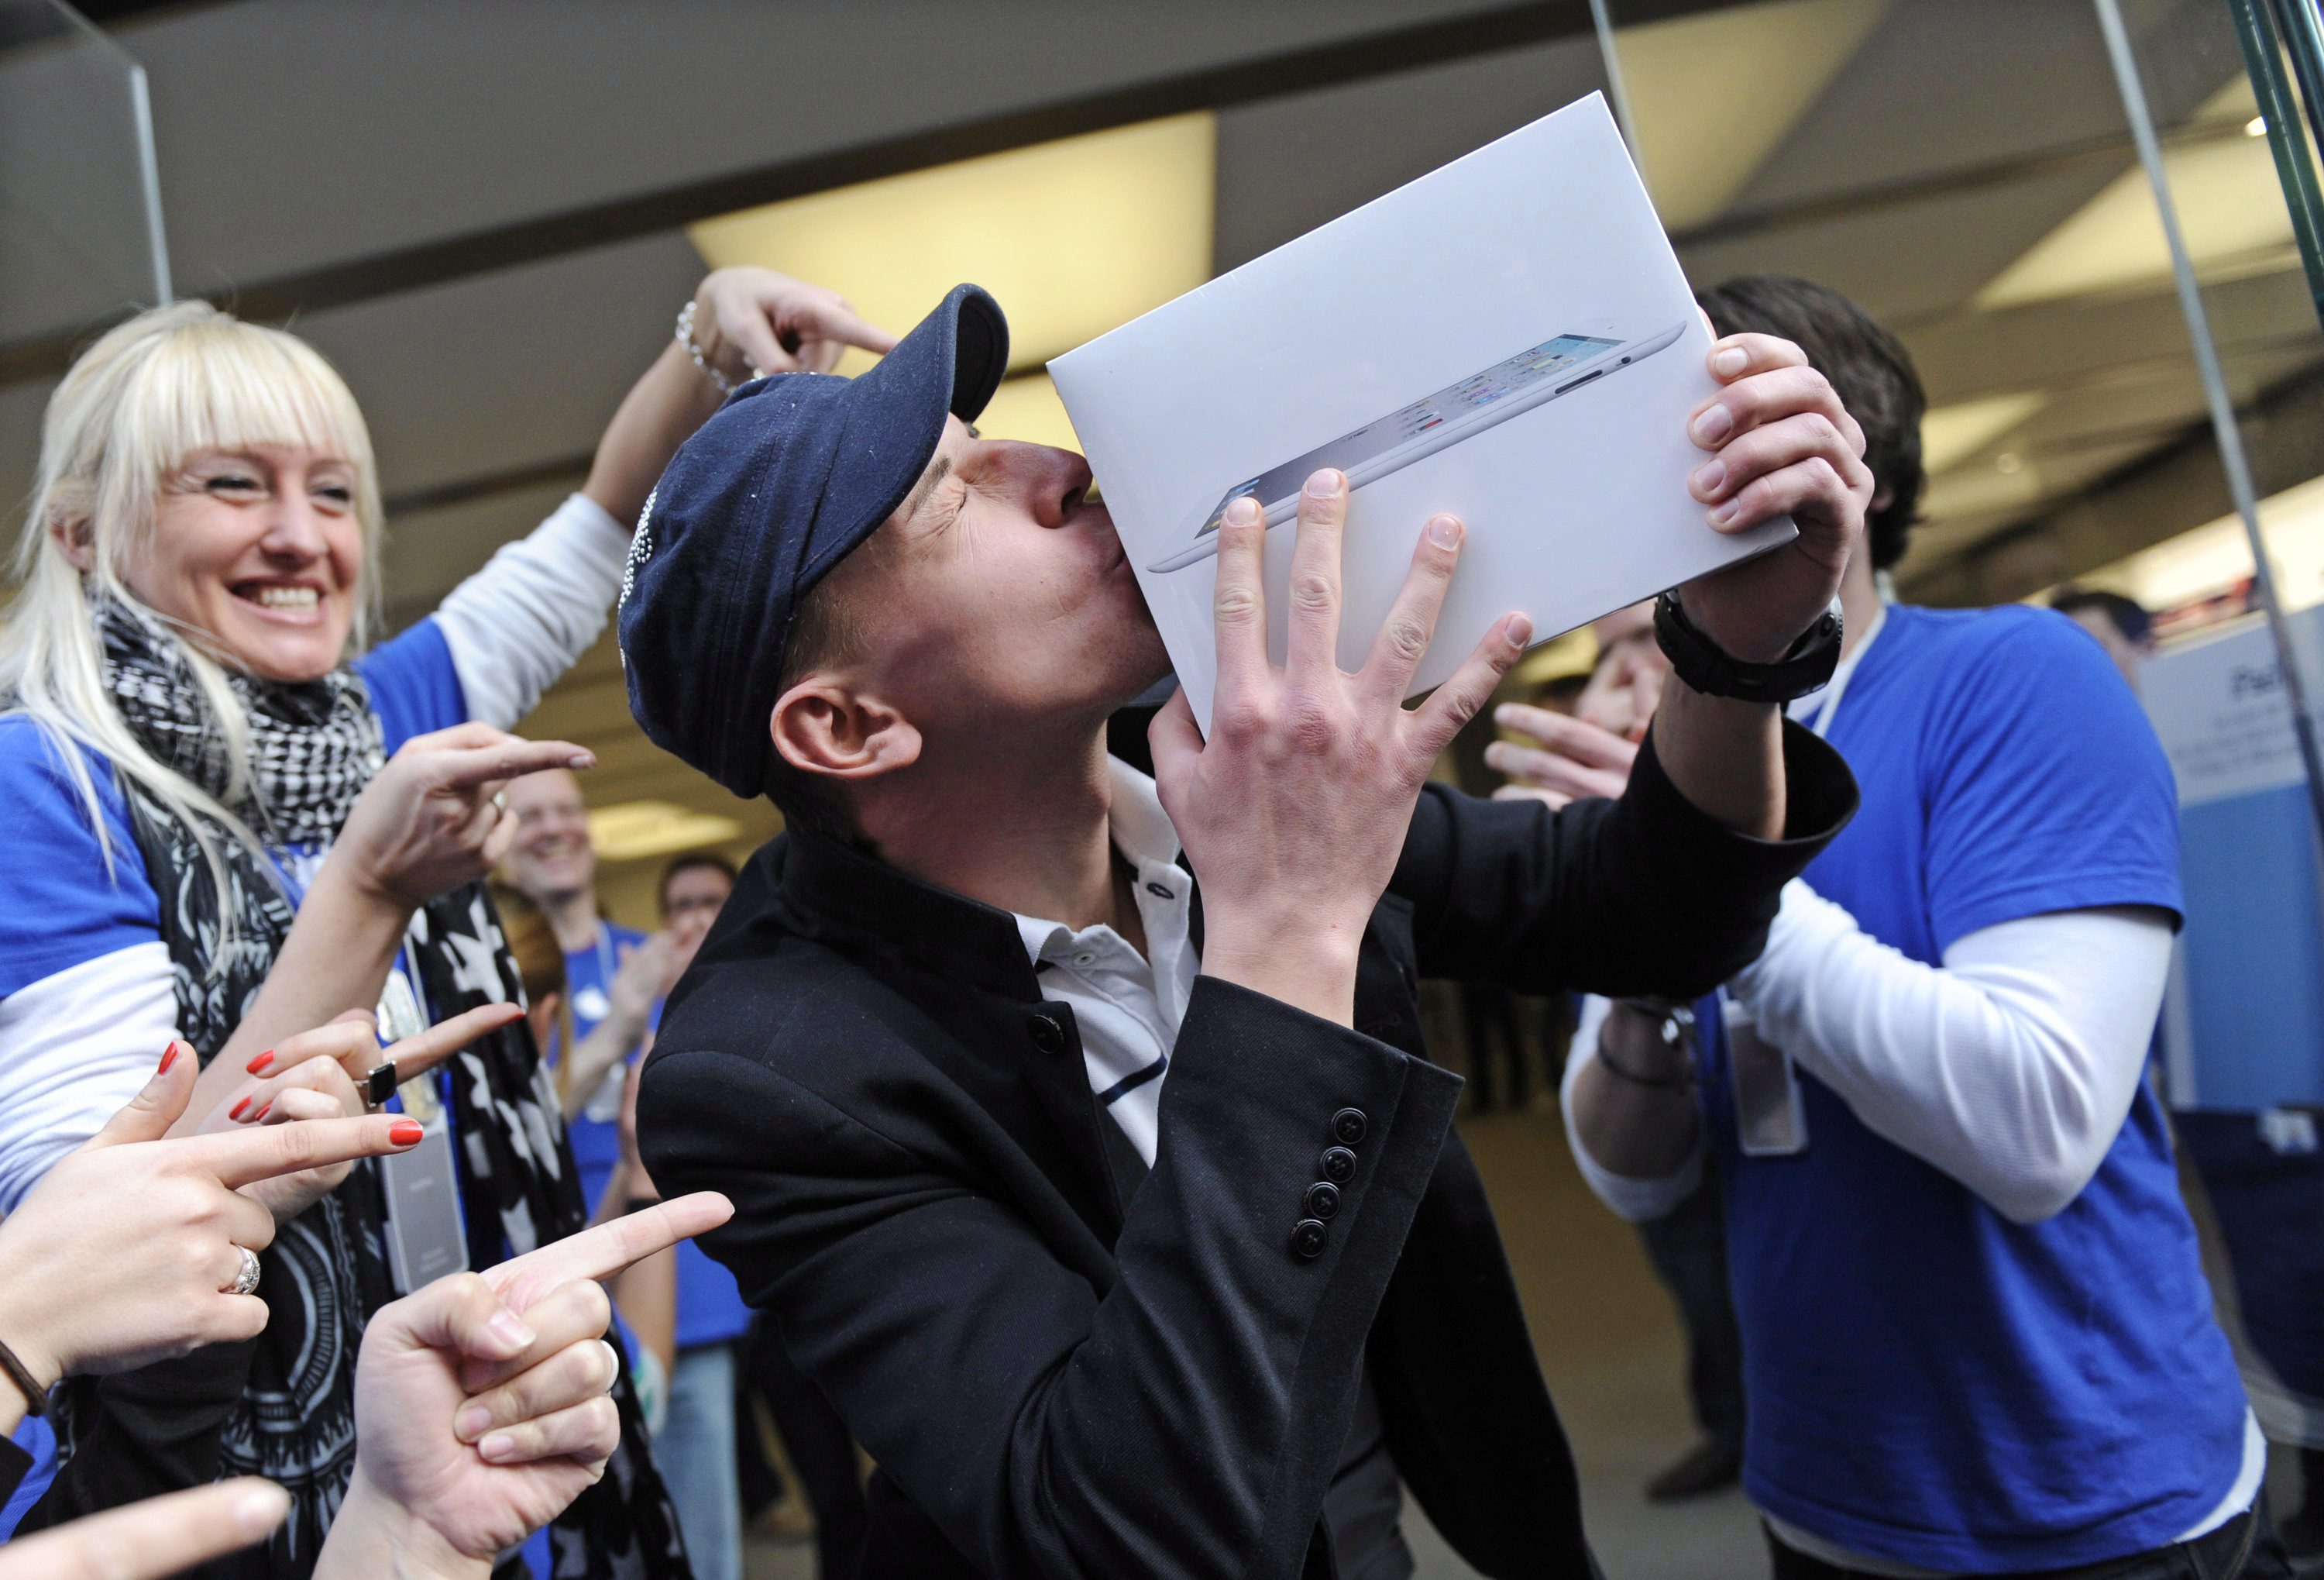 Млад мъж целува току-що придобития си iPad